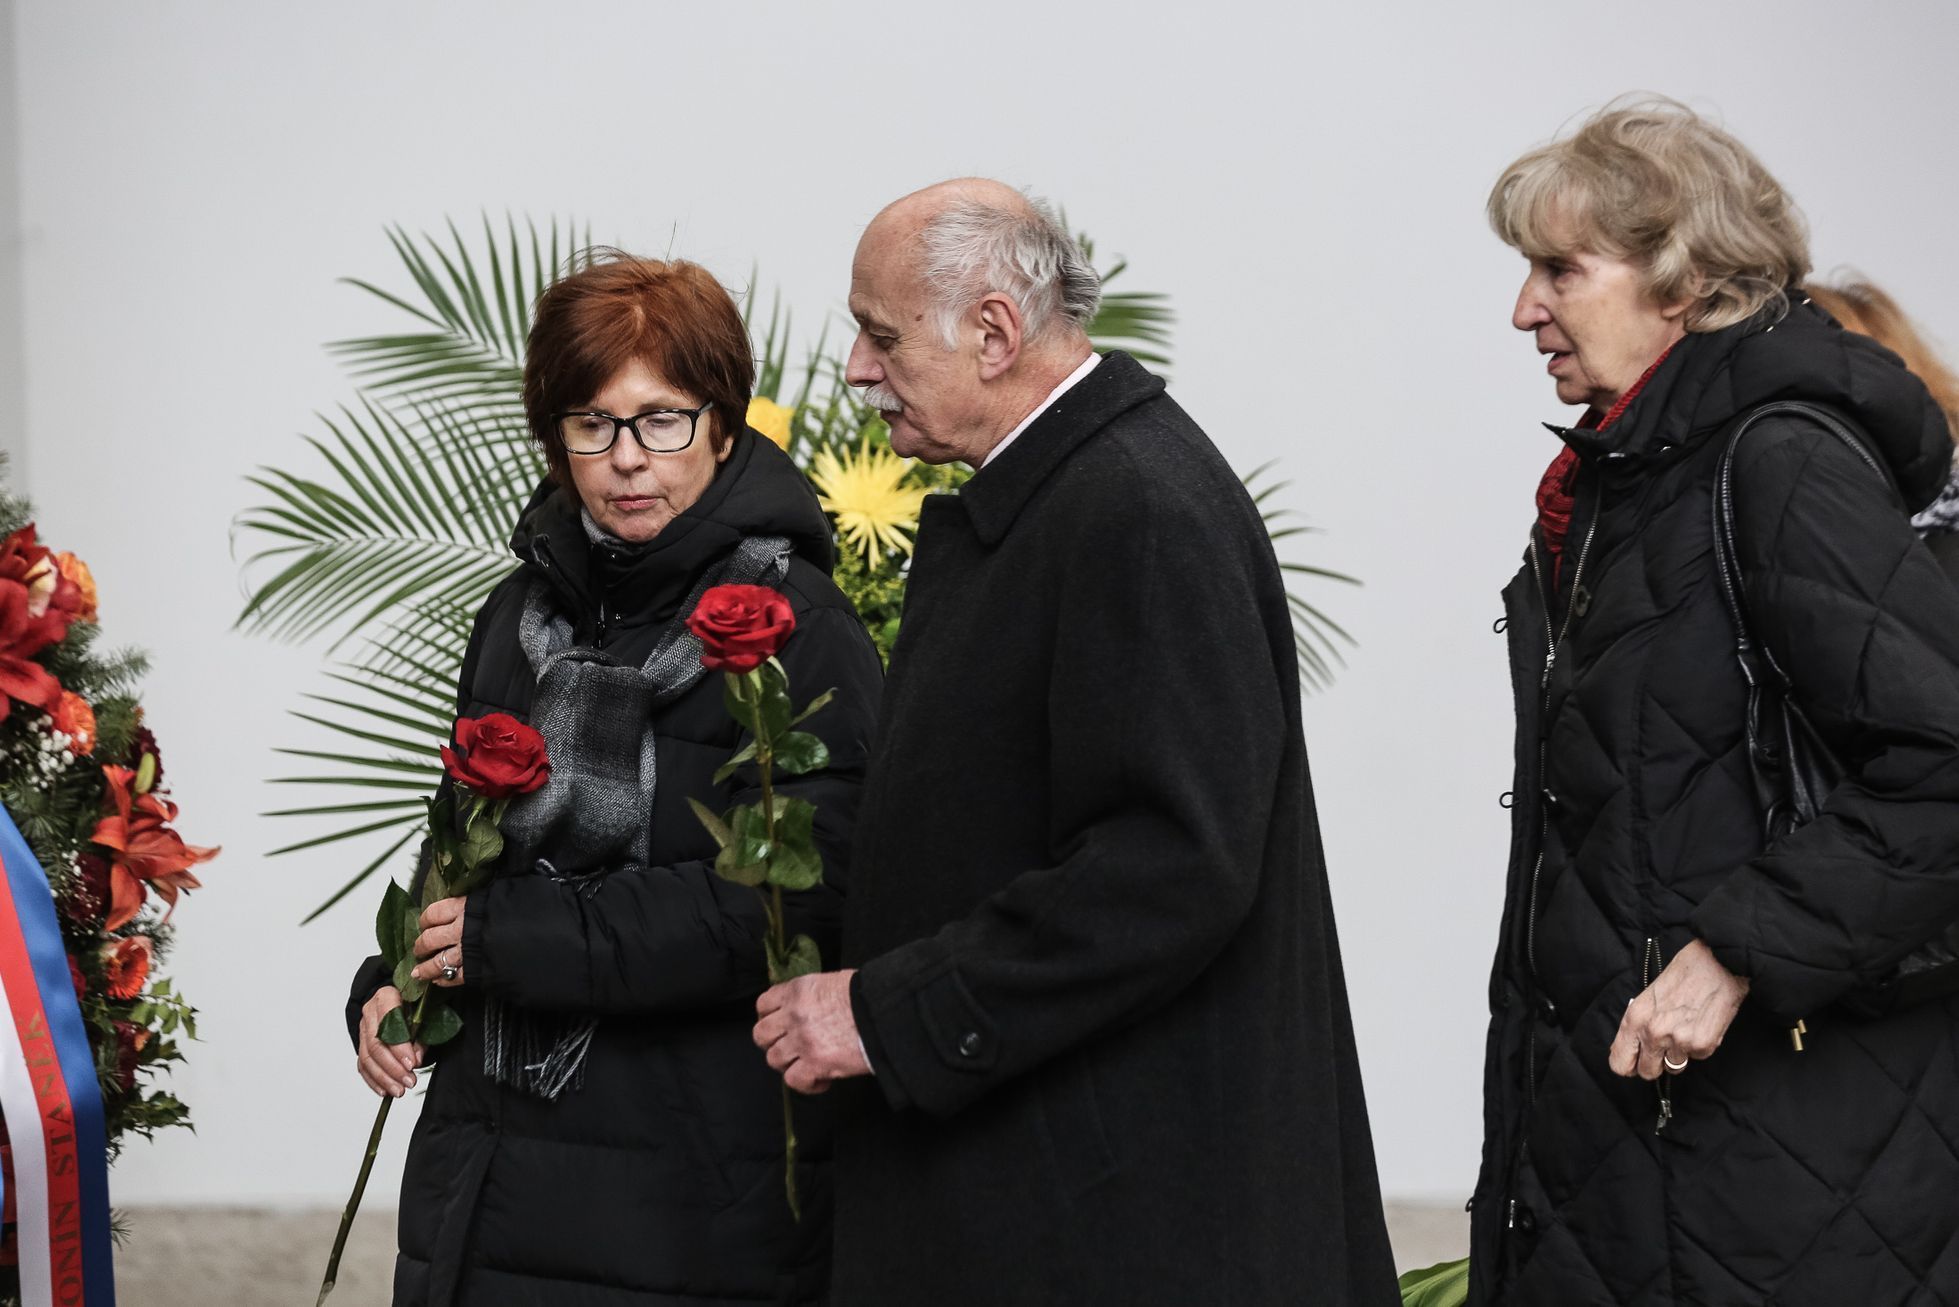 Pohřeb režiséra Václava Vorlíčka, krematorium Strašnice, Praha, 12. 2. 2019